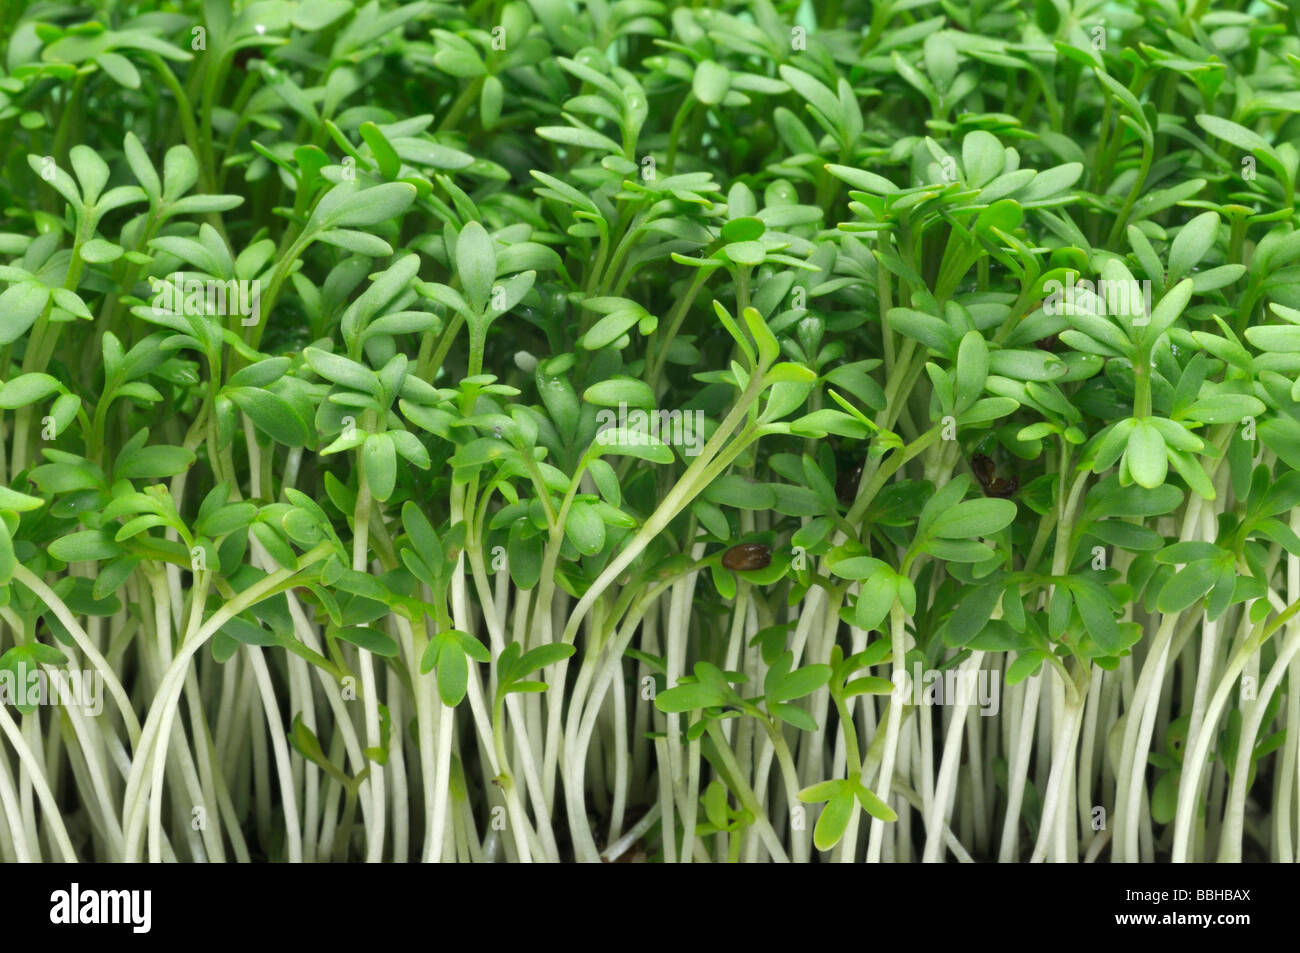 Garden Cress, Pepperwort (Lepidium sativum), young plants Stock Photo